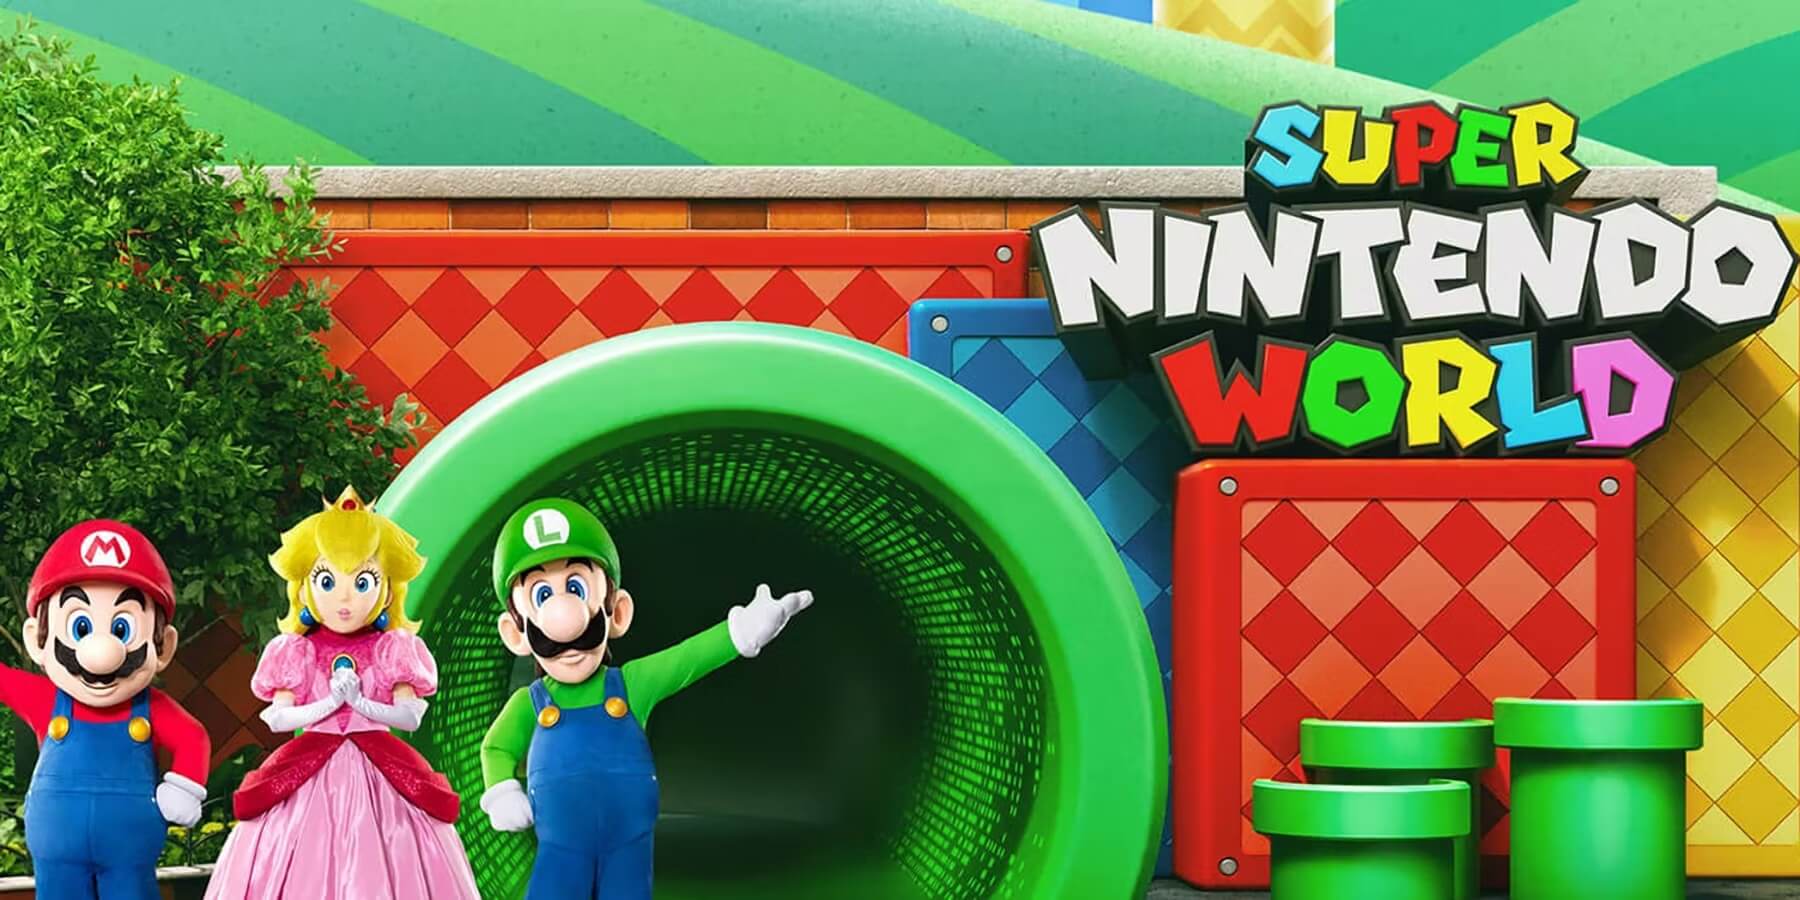 Super Nintendo World mừng sinh nhật 1 tuổi với quà xịn và nhà hàng Mario